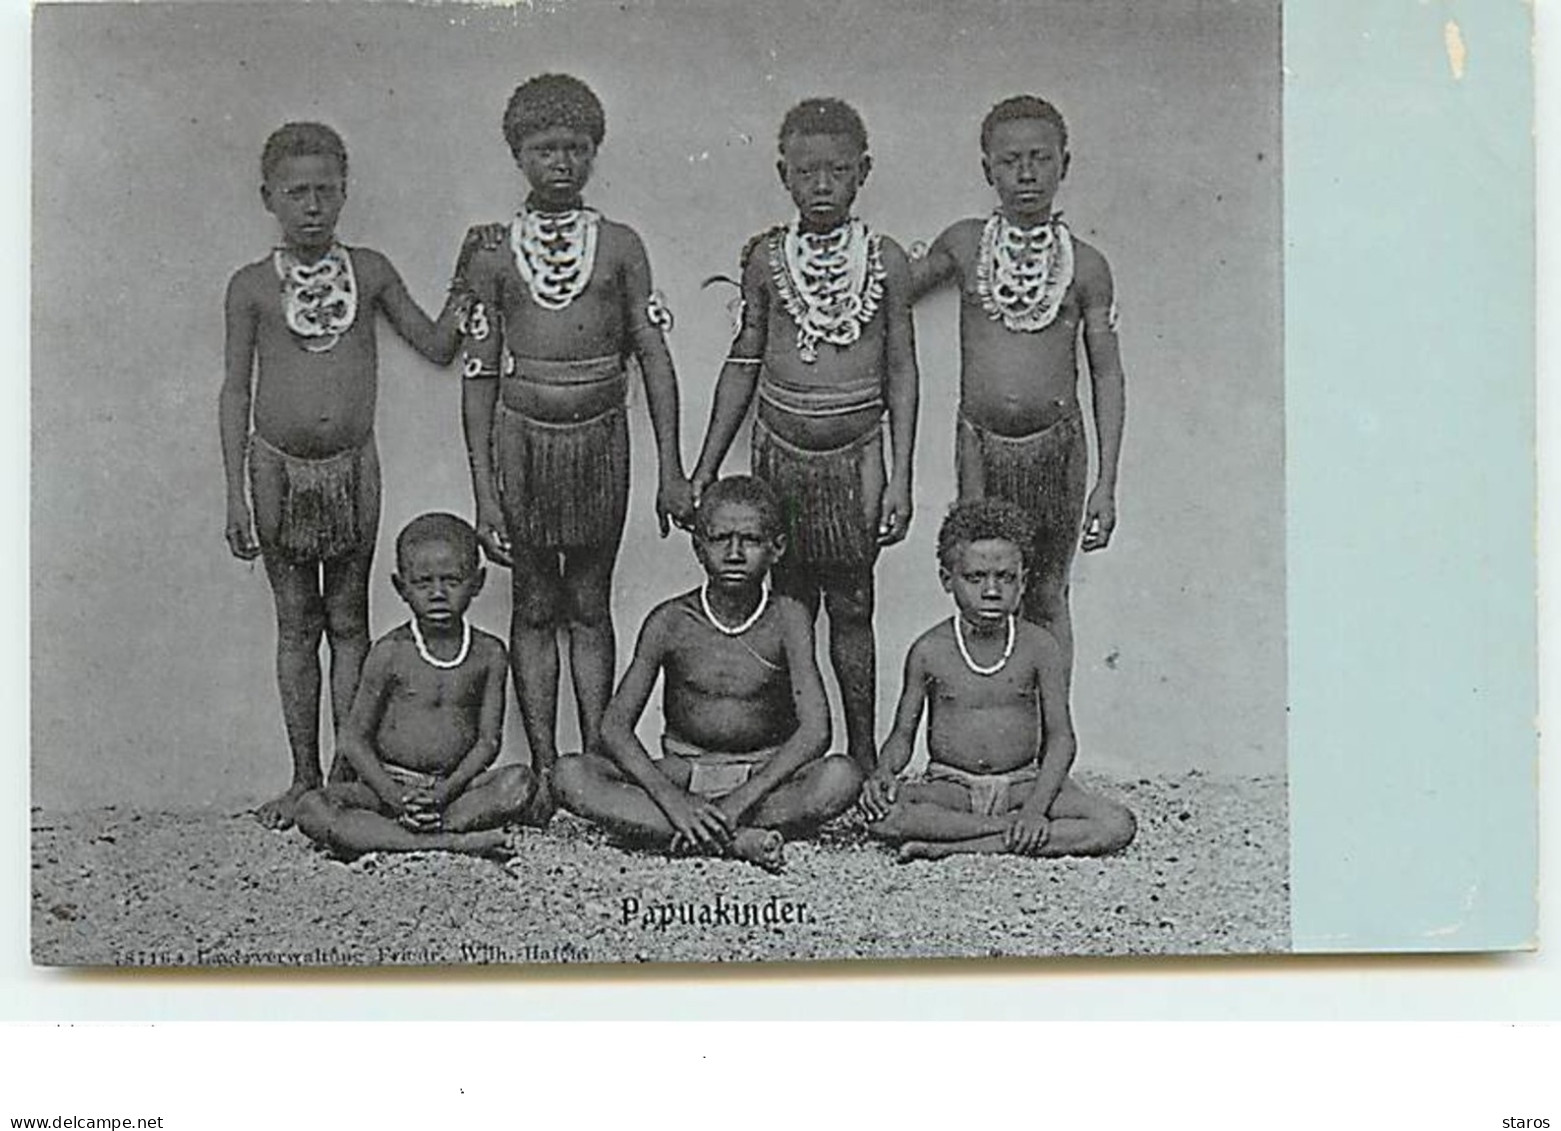 Papouasie - Papuakinder - Enfants - Papouasie-Nouvelle-Guinée